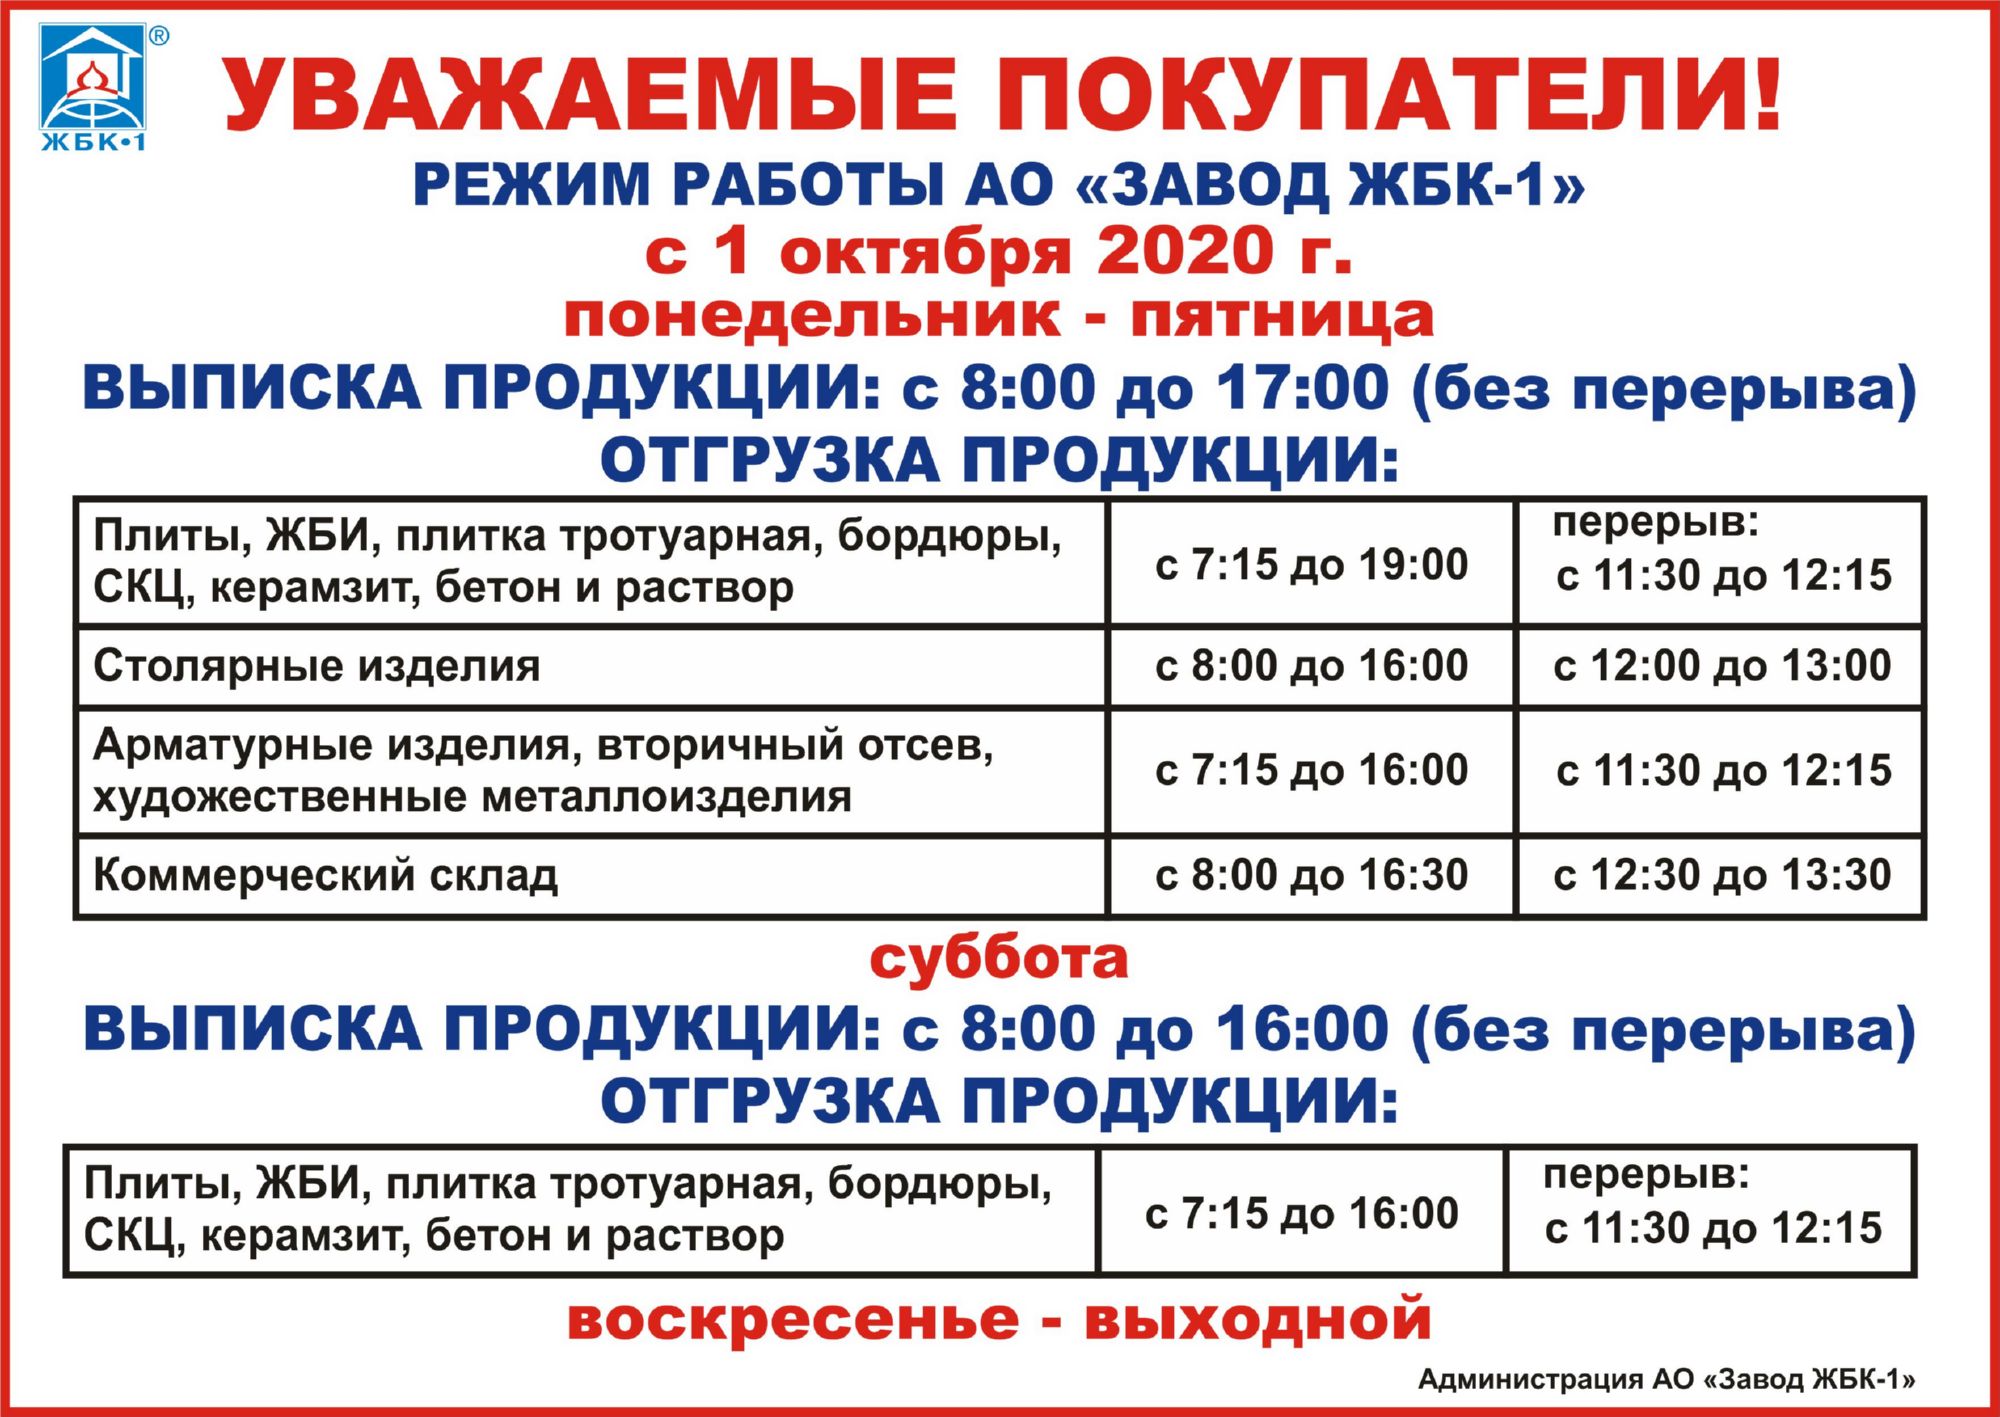 Режим работы АО "Завод ЖБК-1" с 1 октября 2020 г.